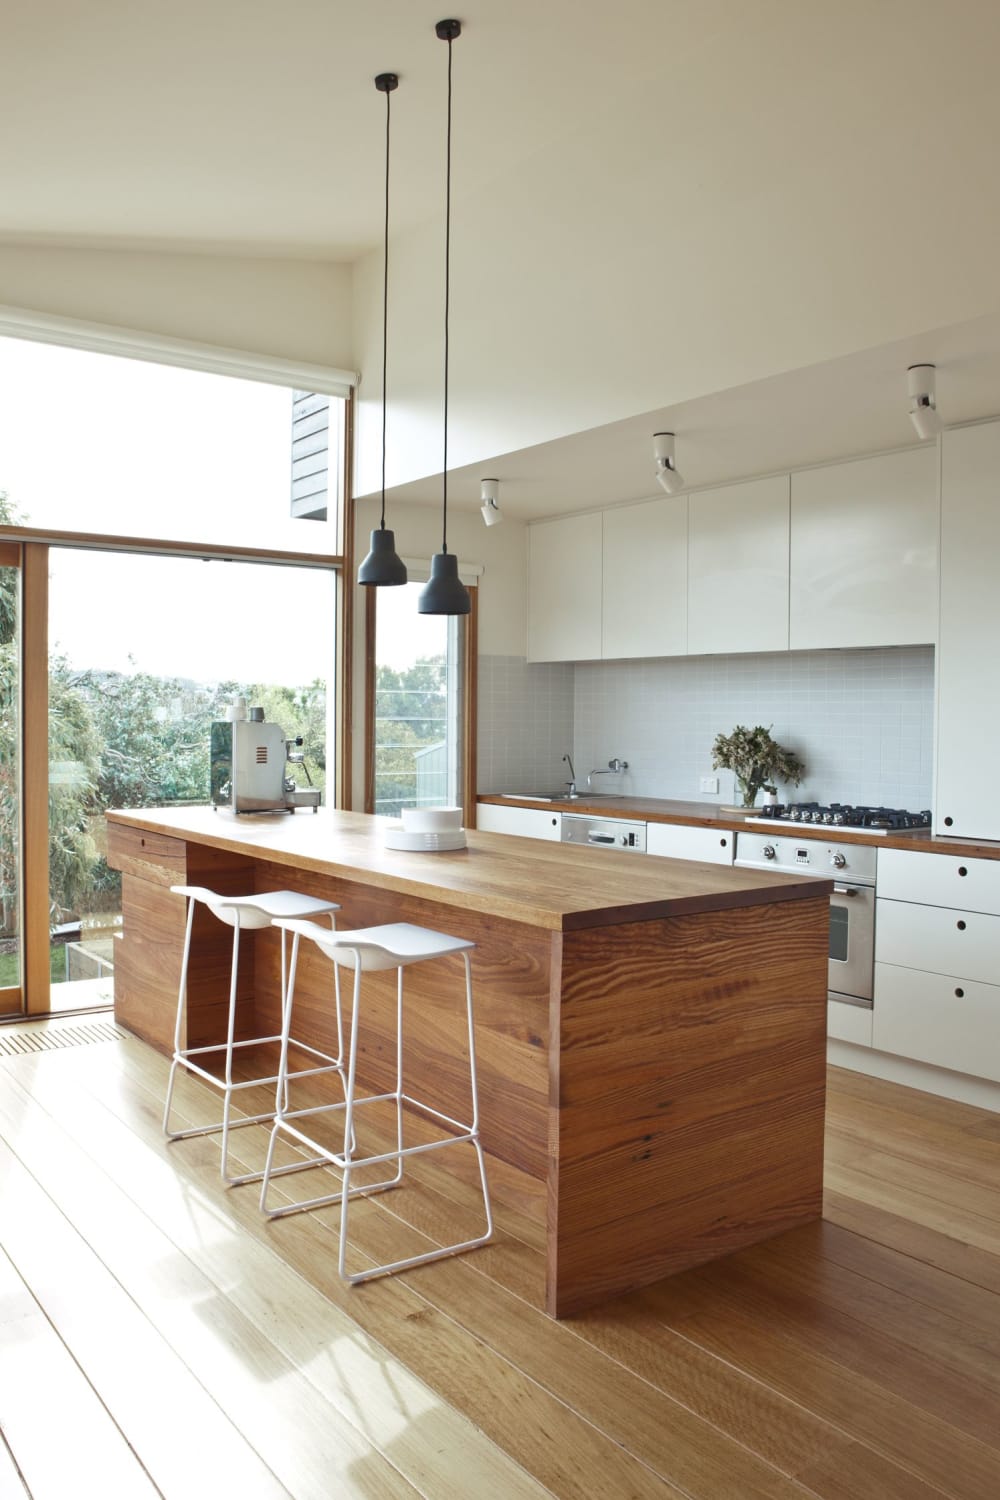 11 Minimalist Style and Décor Ideas | Home decor kitchen, Kitchen design, Modern kitchen design